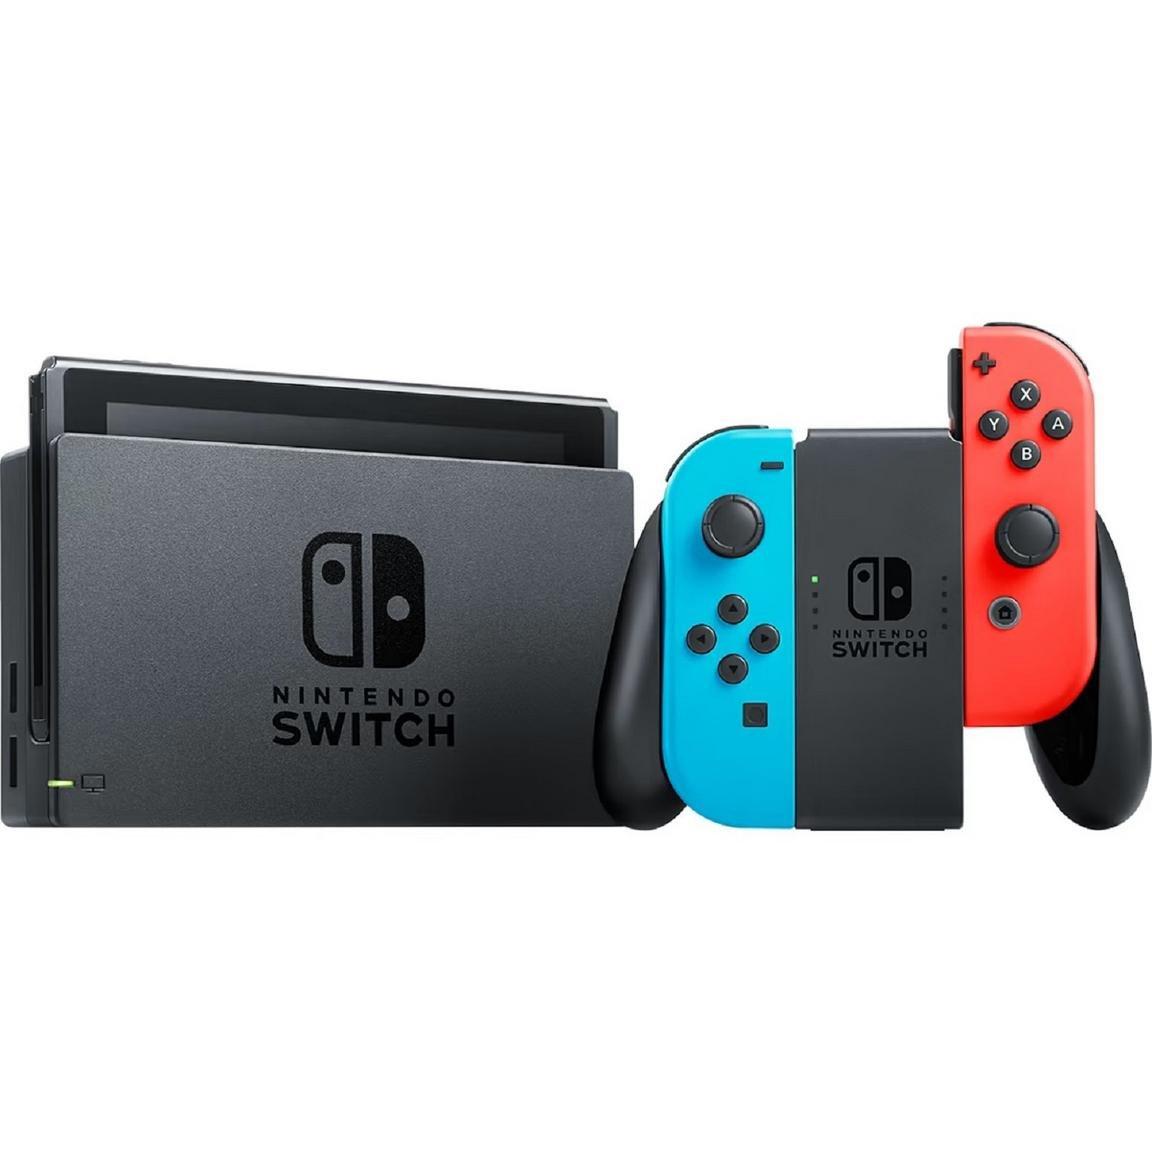 ソフトパープル Nintendo Switch NINTENDO SWITCH JOY-CON - 通販 